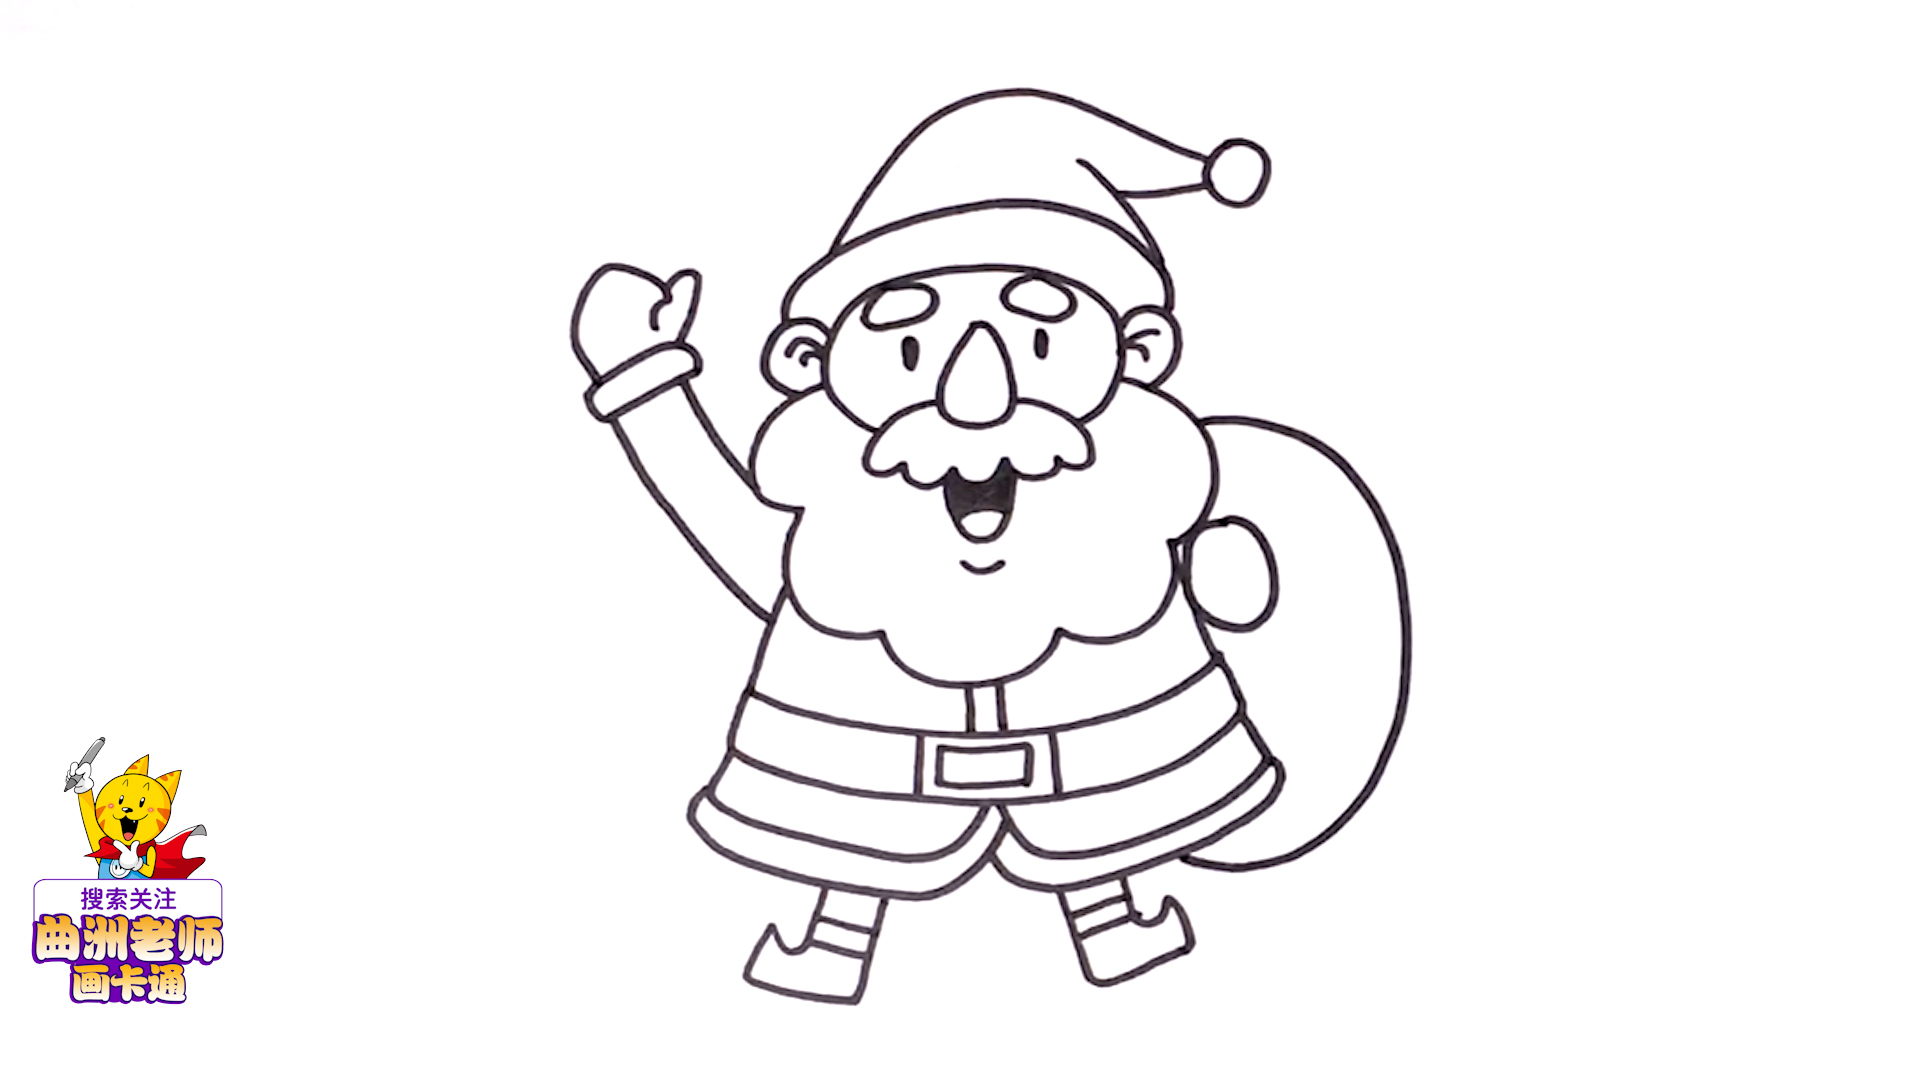 圣诞老人简笔画教程(圣诞节简笔画:教你画出三款圣诞老人的卡通形象)